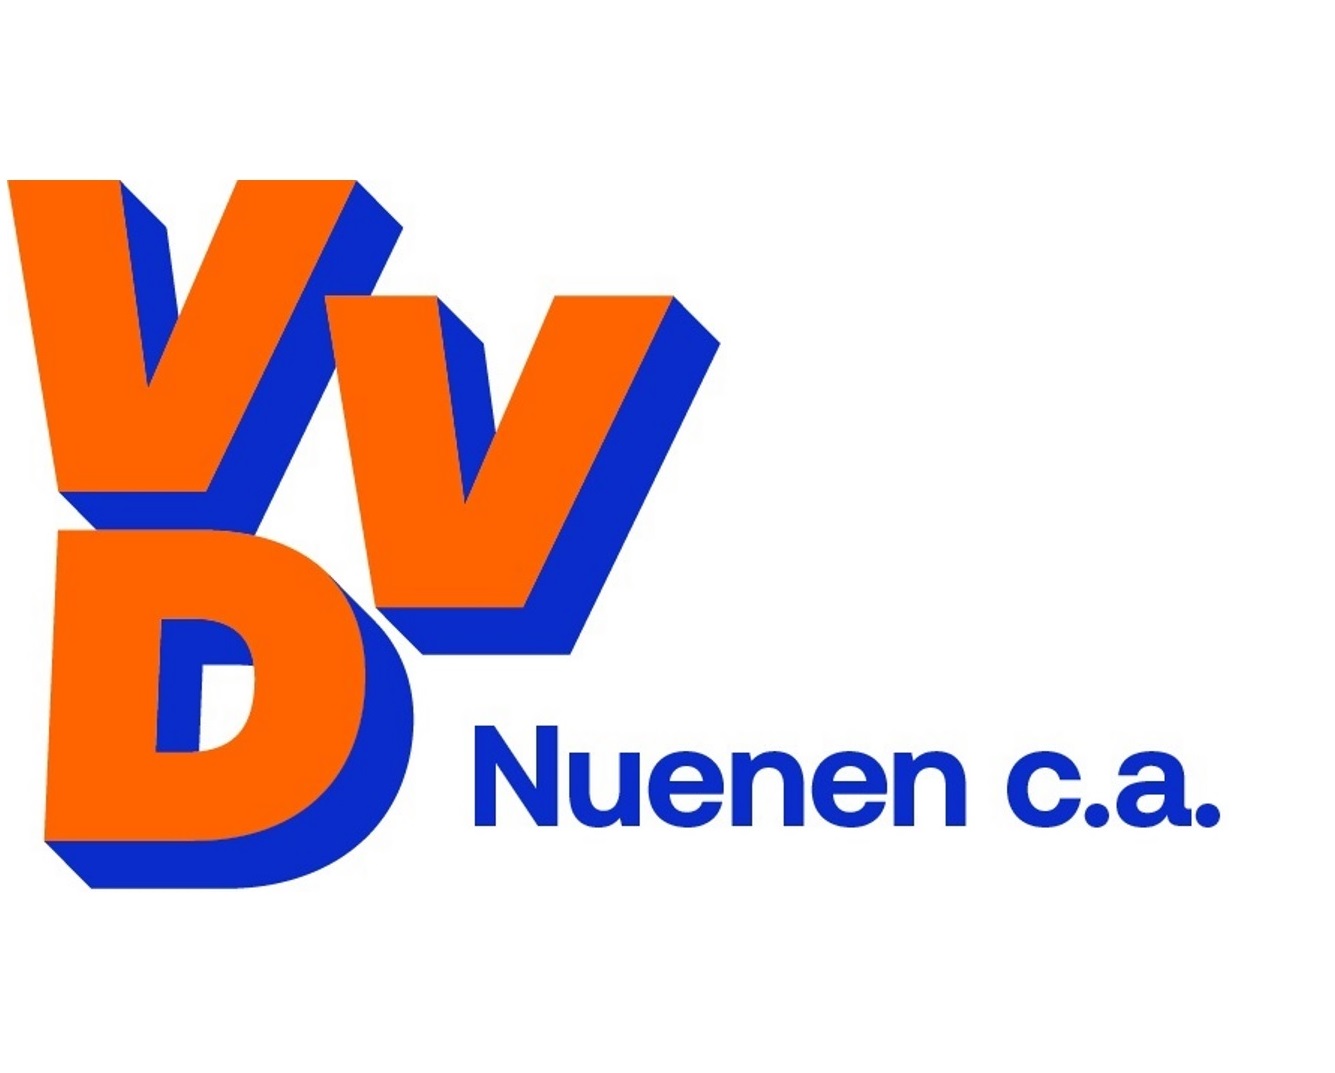 VVD Nuenen c.a.